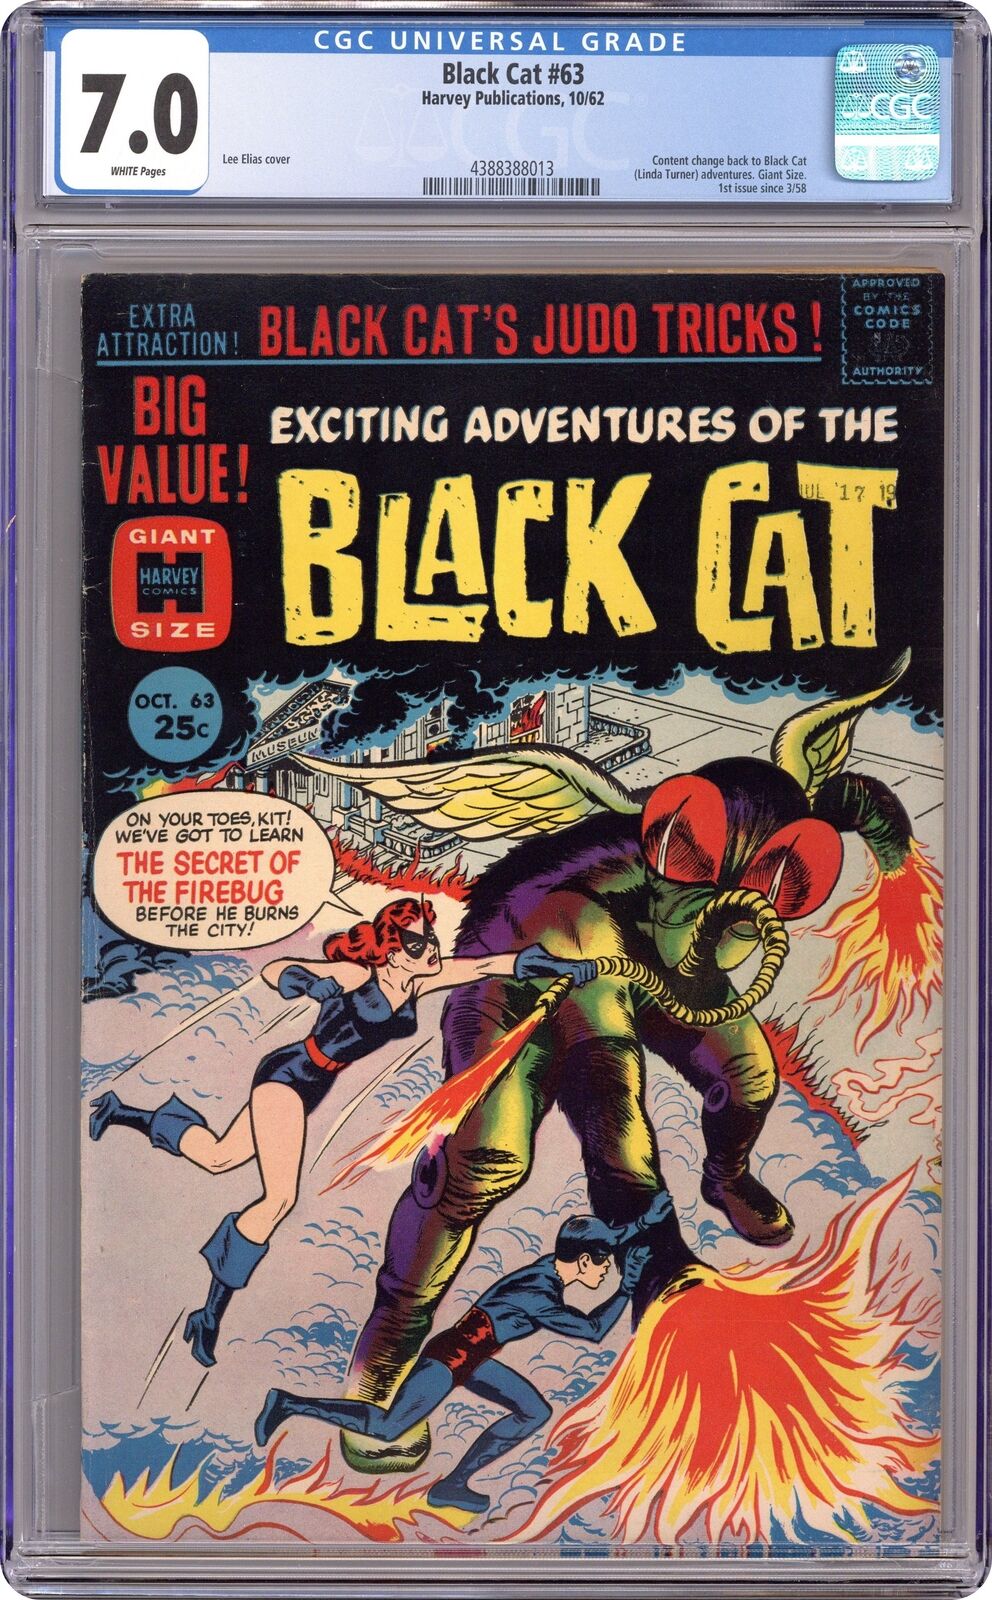 Black Cat Mystery #63 CGC 7.0 1962 4388388013